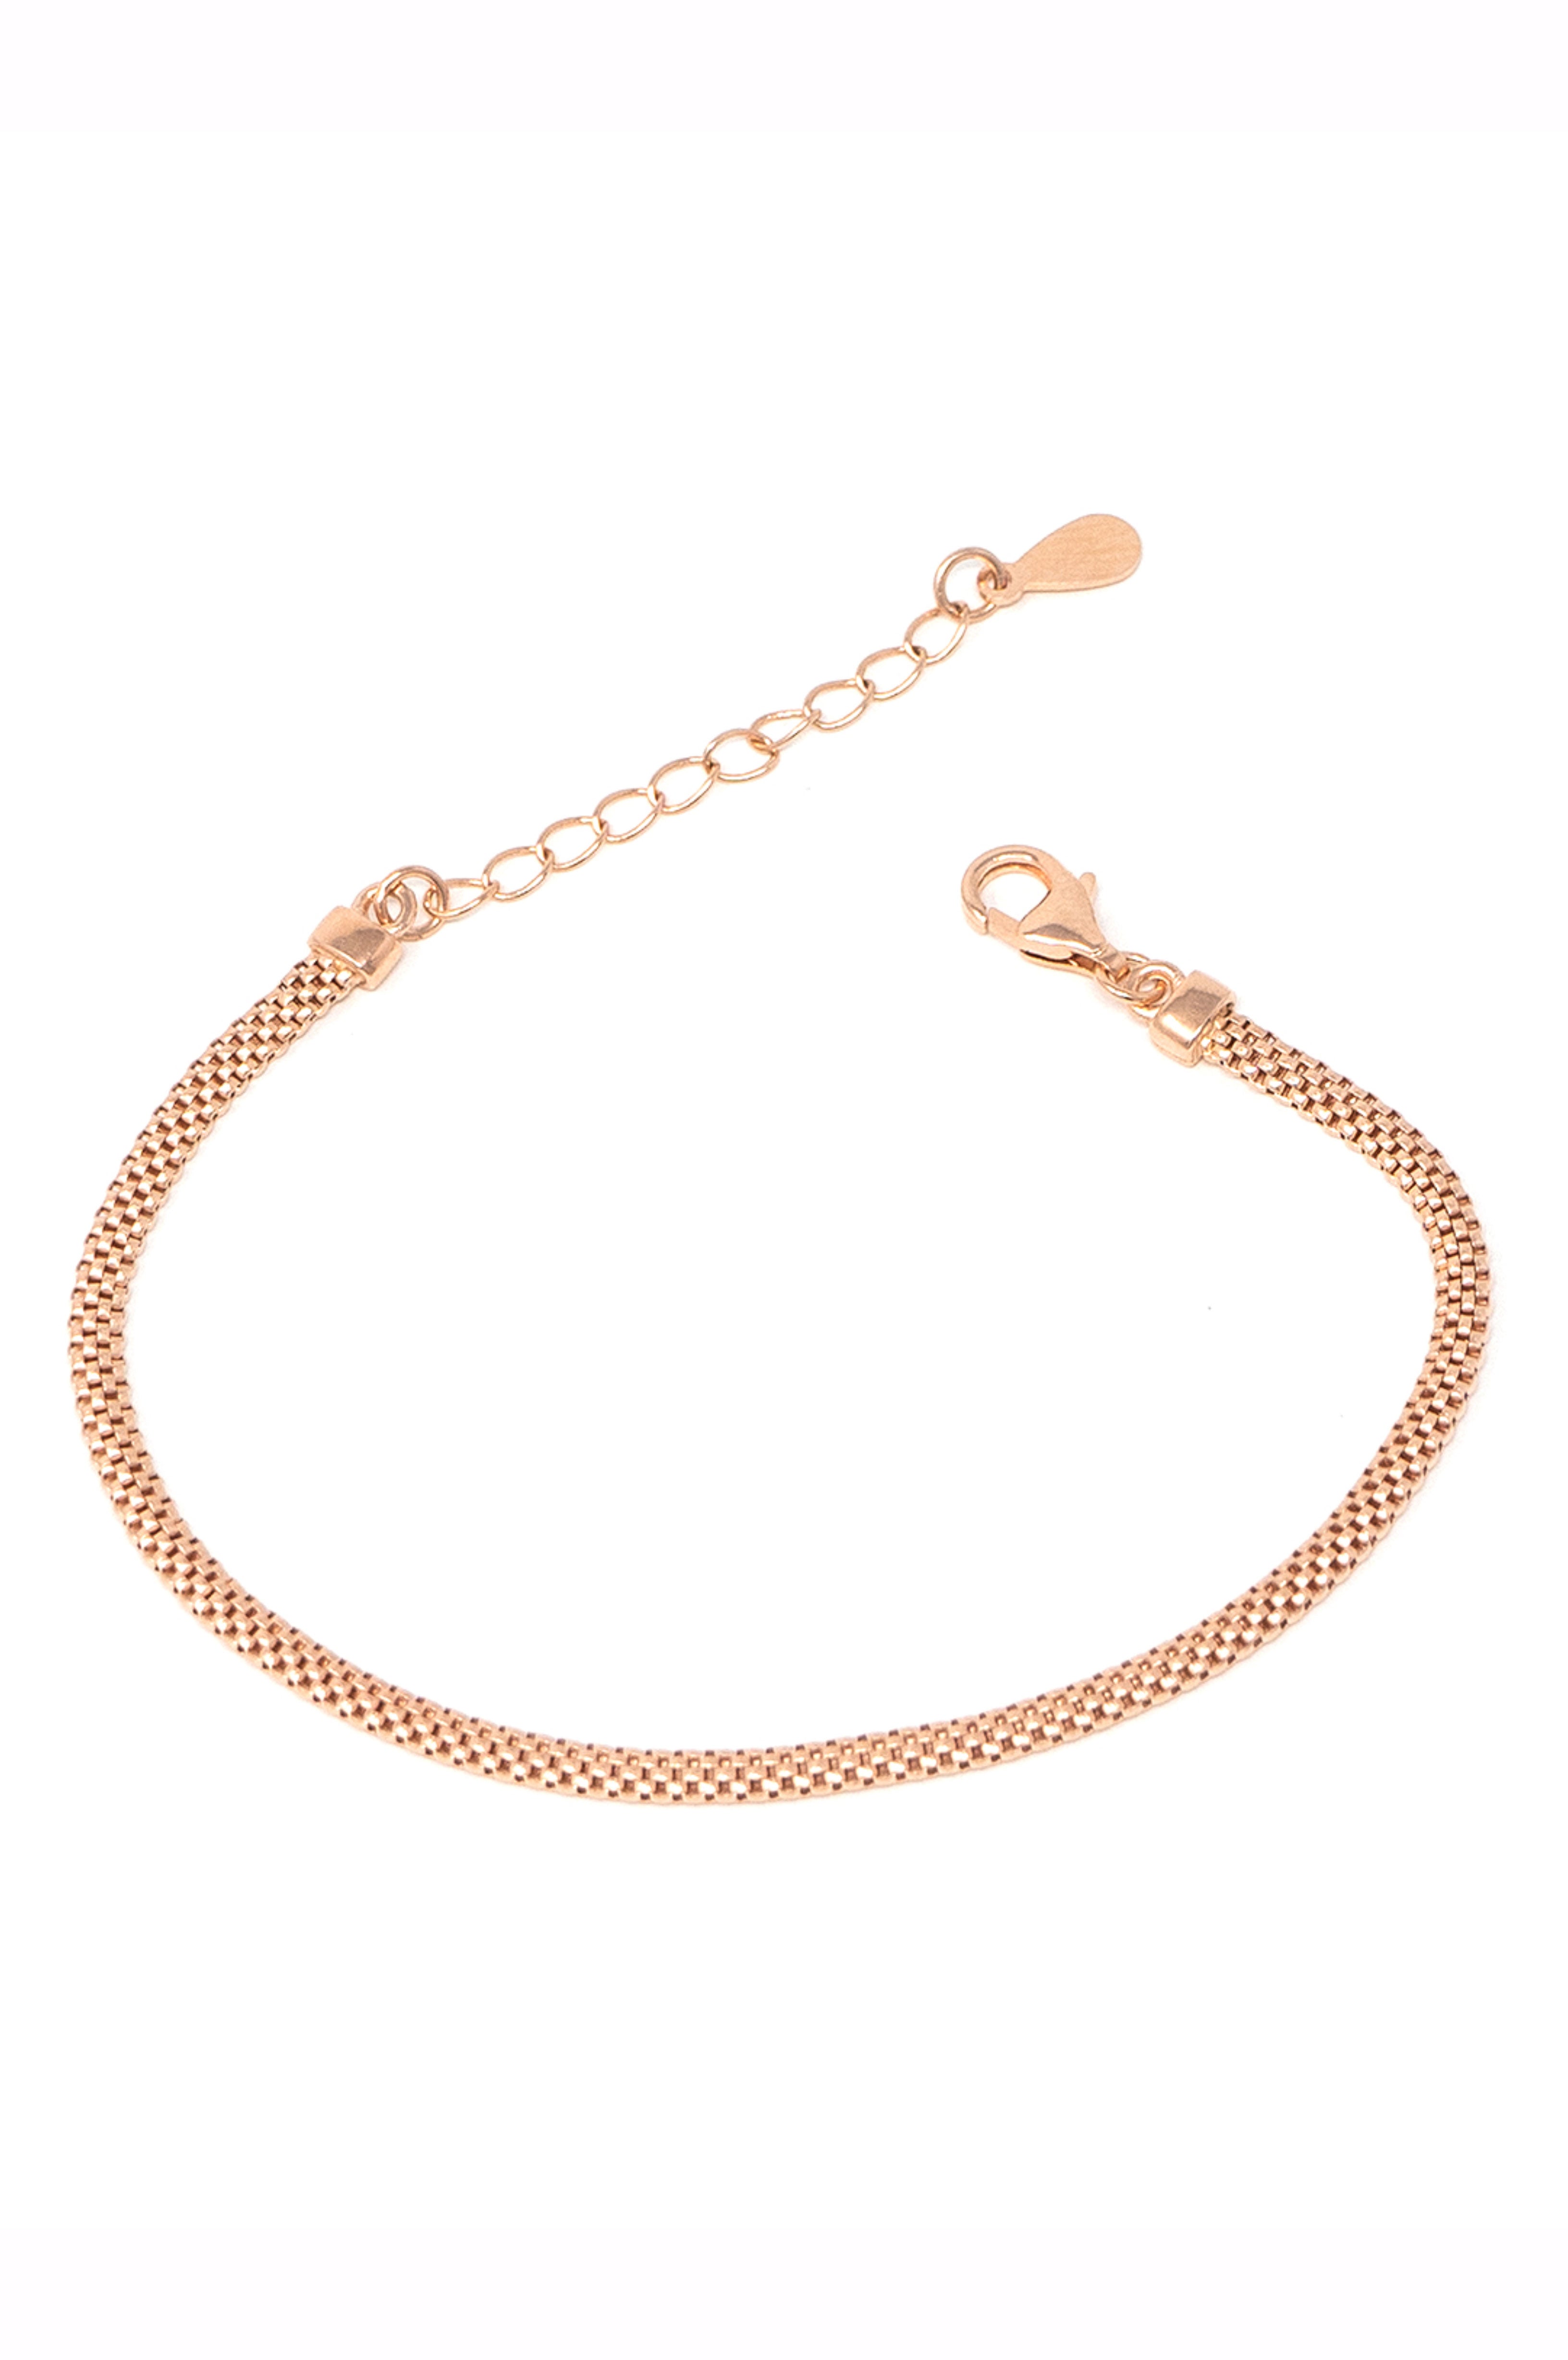 BECCA GOLD SNAKE CHAIN BRACELET  Gold snake chain Jewelry gift sets  Shiny bracelets